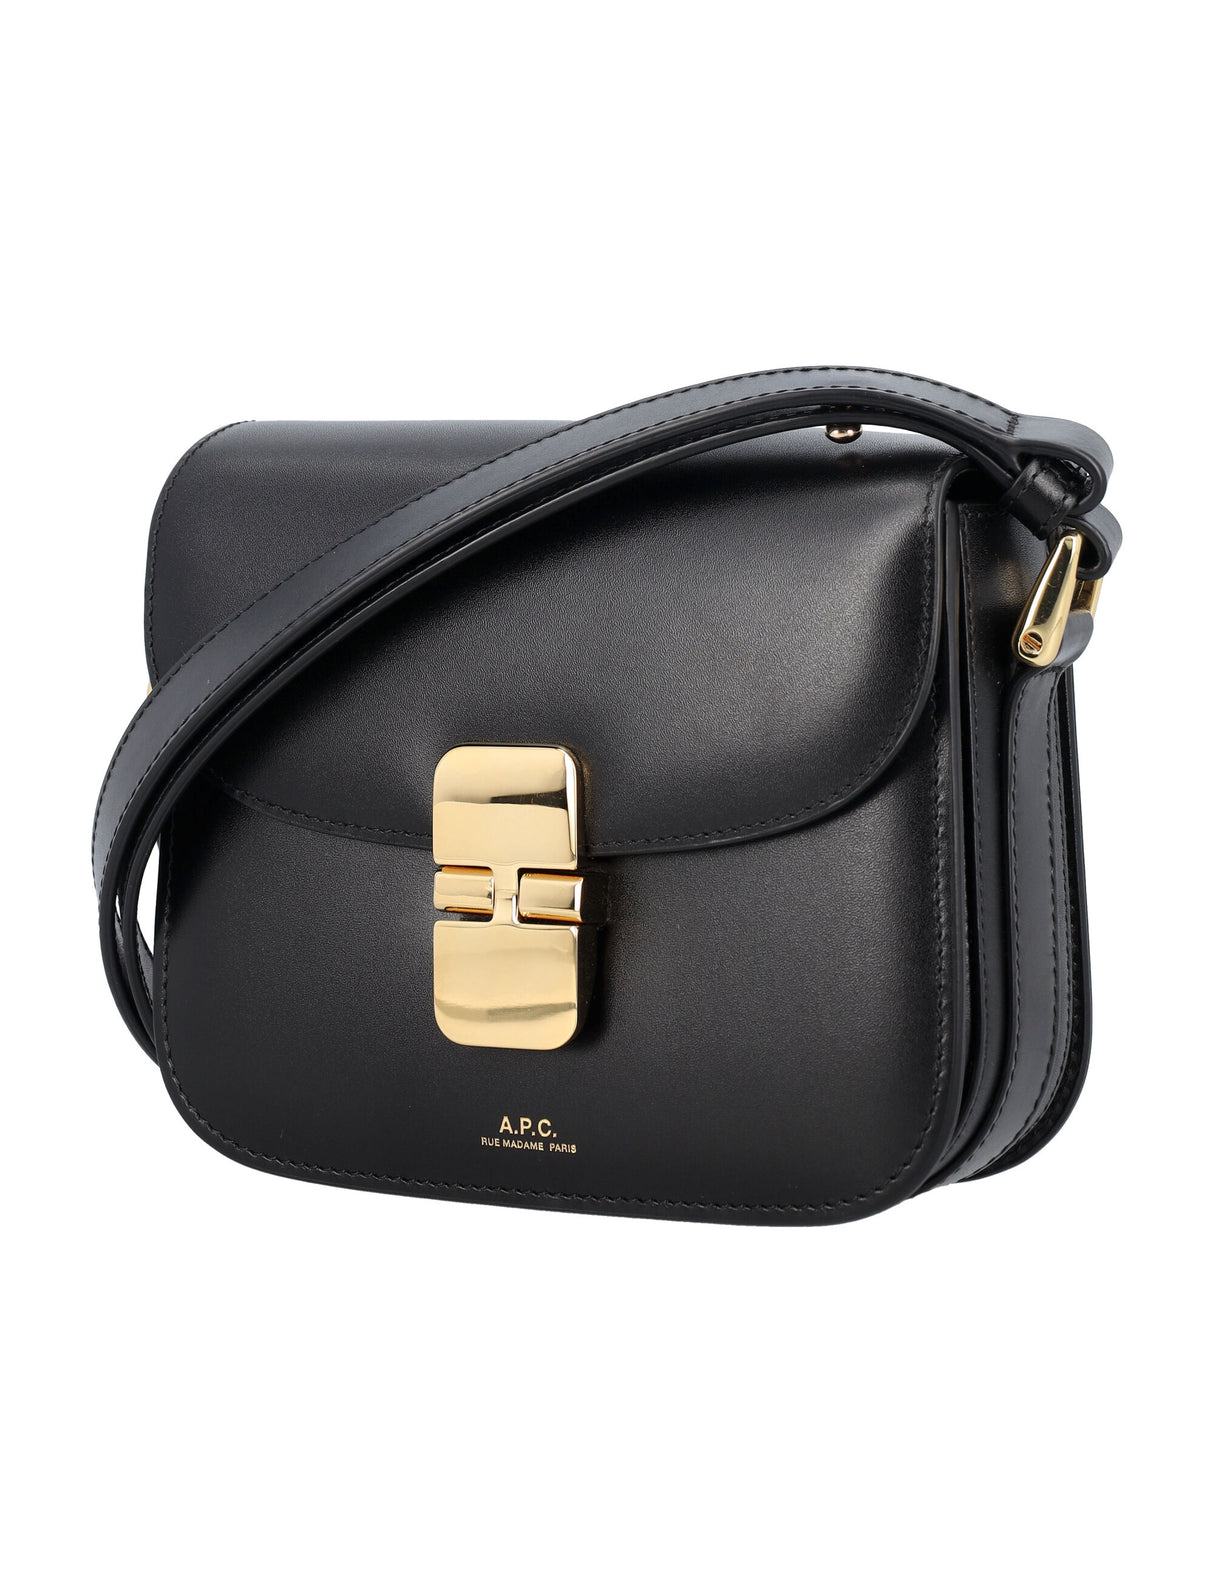 A.P.C. Grace Mini Black Leather Shoulder Bag with Goldtone Details, 14.5 x 17.5 x 4 cm